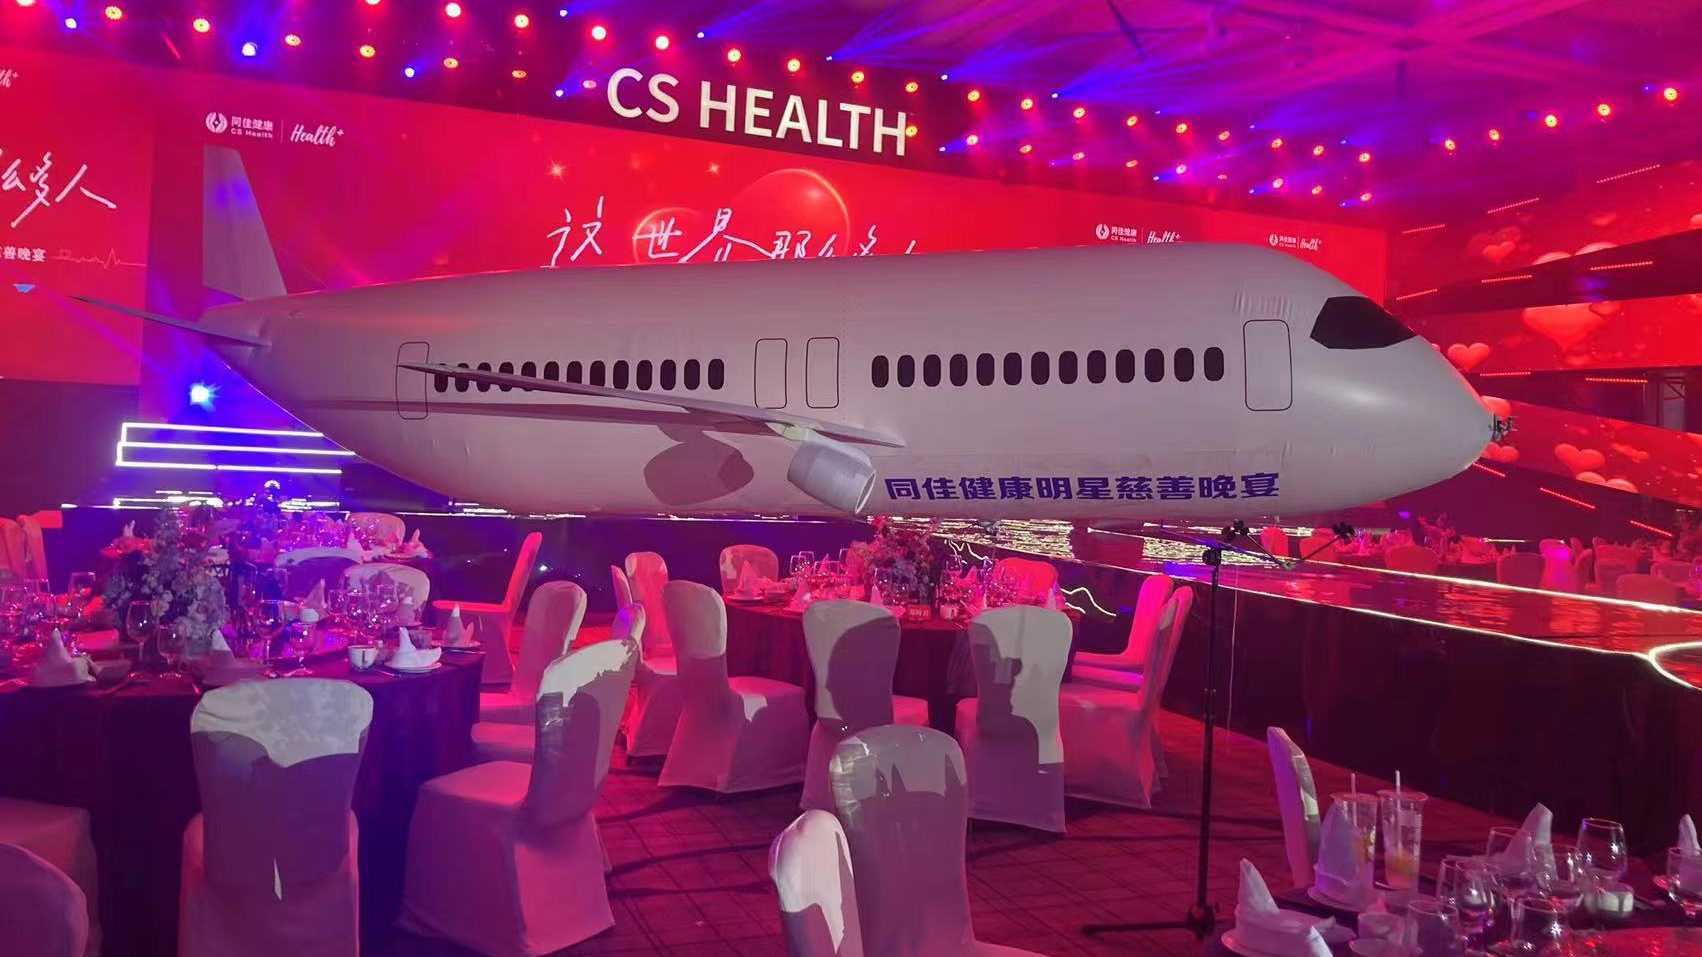 健康中国同佳号大飞机启动仪式